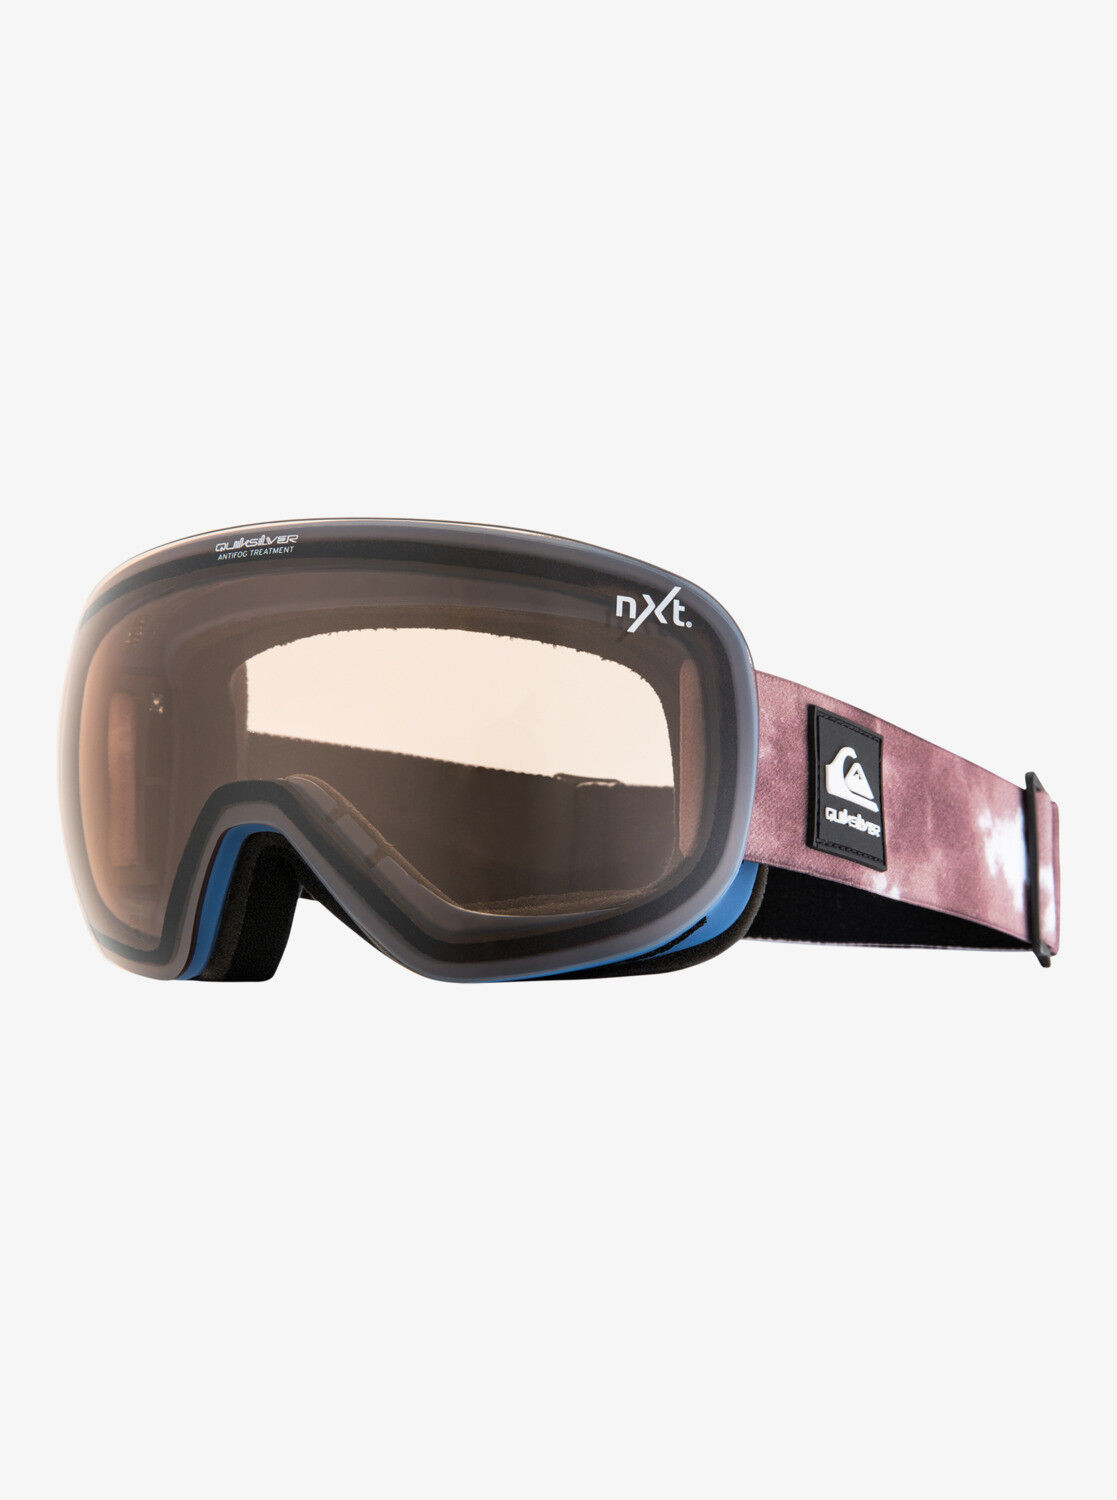 Quiksilver QSR Nxt - Ski goggles - Men's | Hardloop